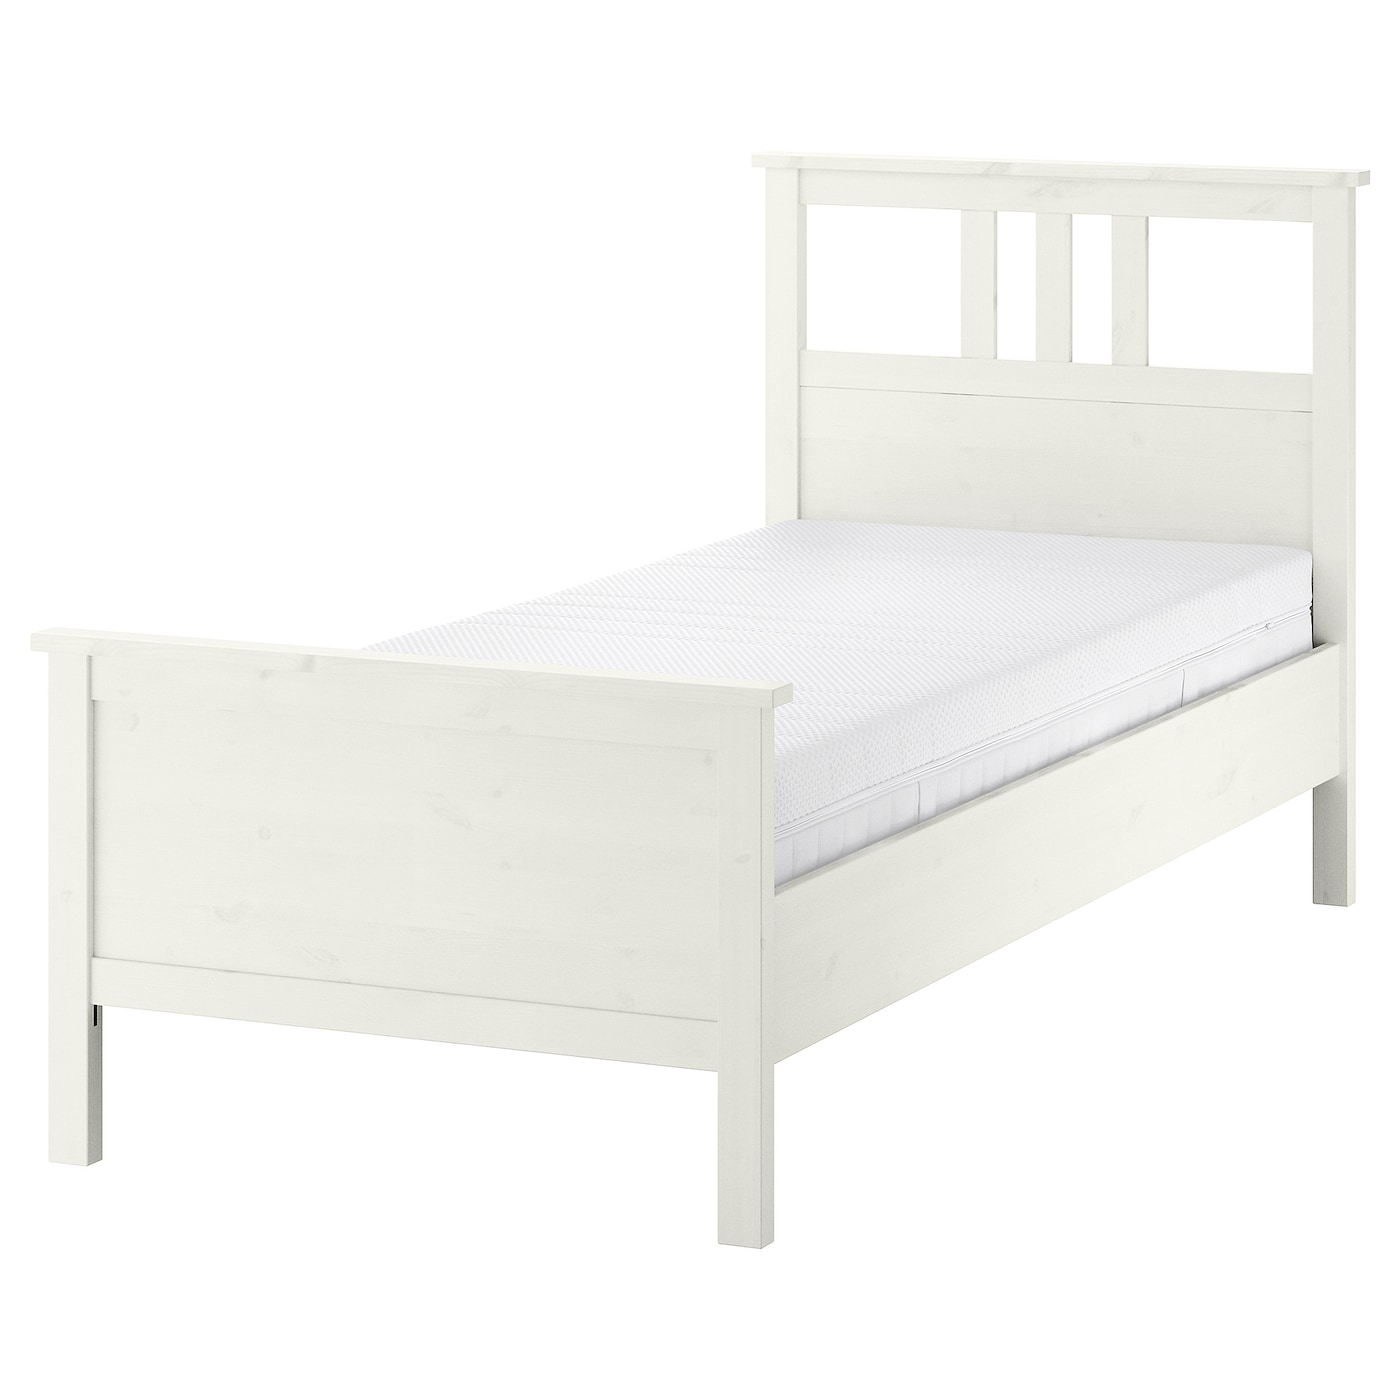 Кровать - IKEA HEMNES, 200х90 см, матрас средне-жесткий, белая морилка, ХЕМНЭС ИКЕА